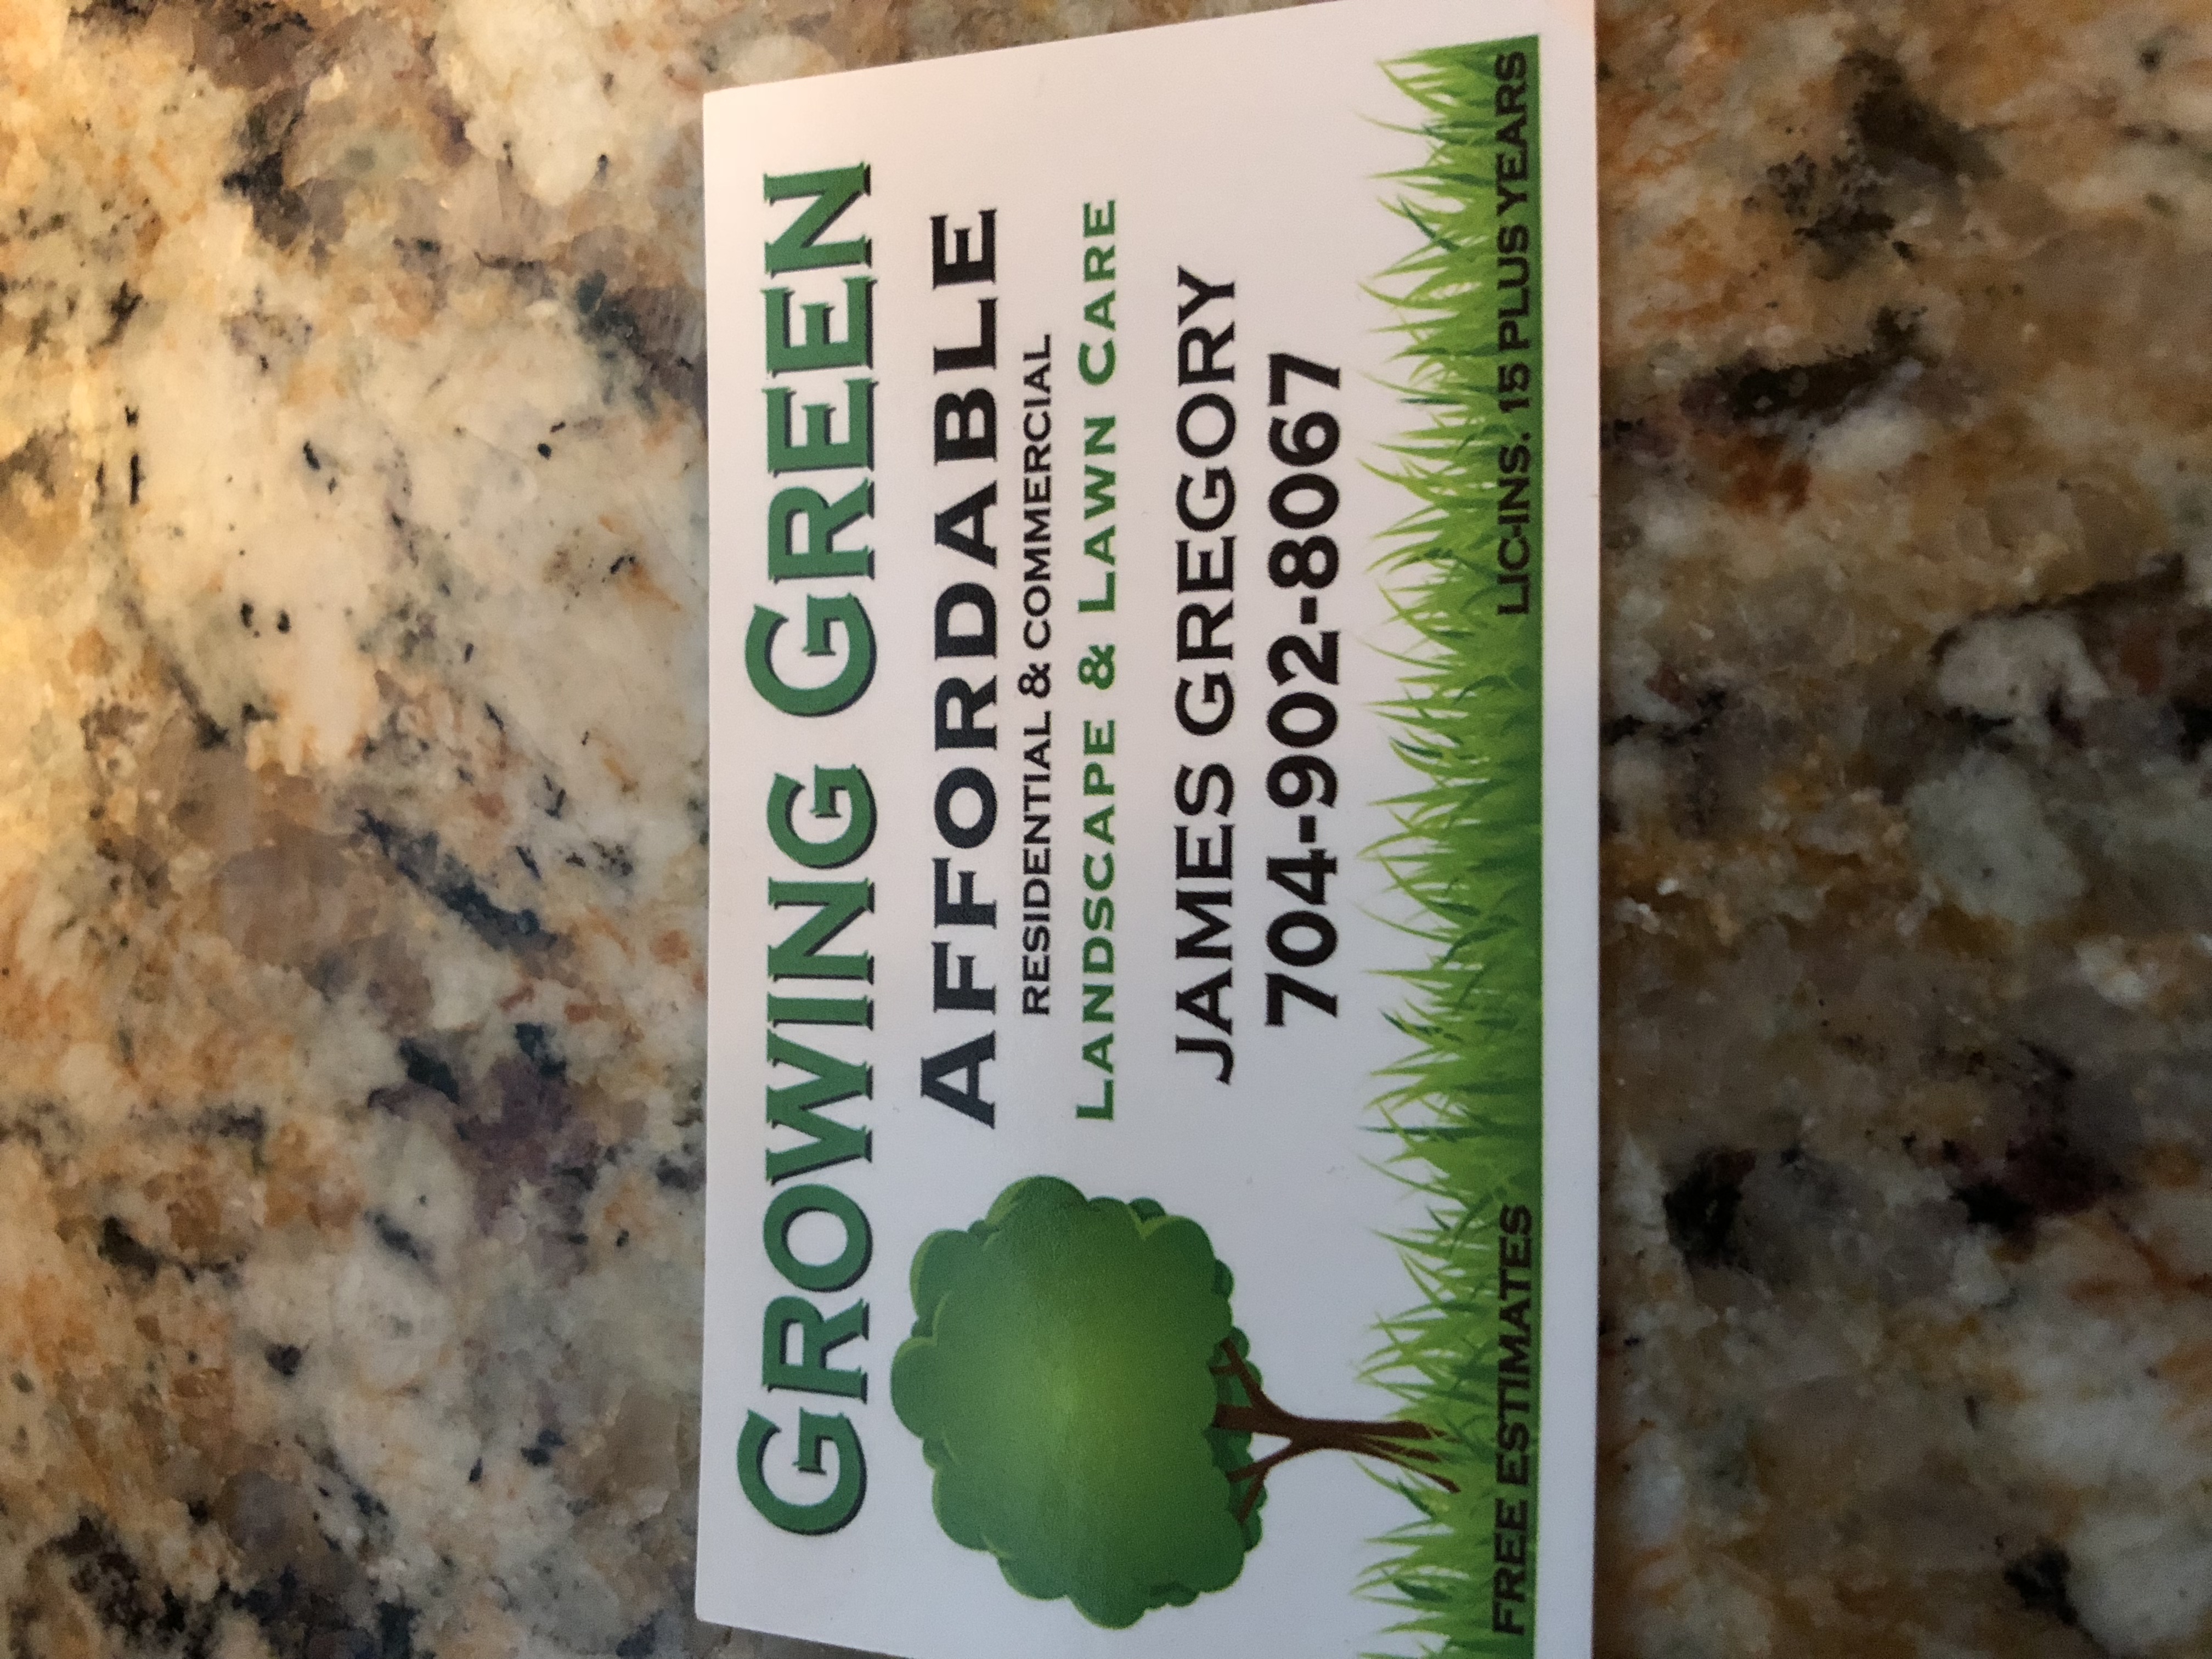 Growing Green Logo